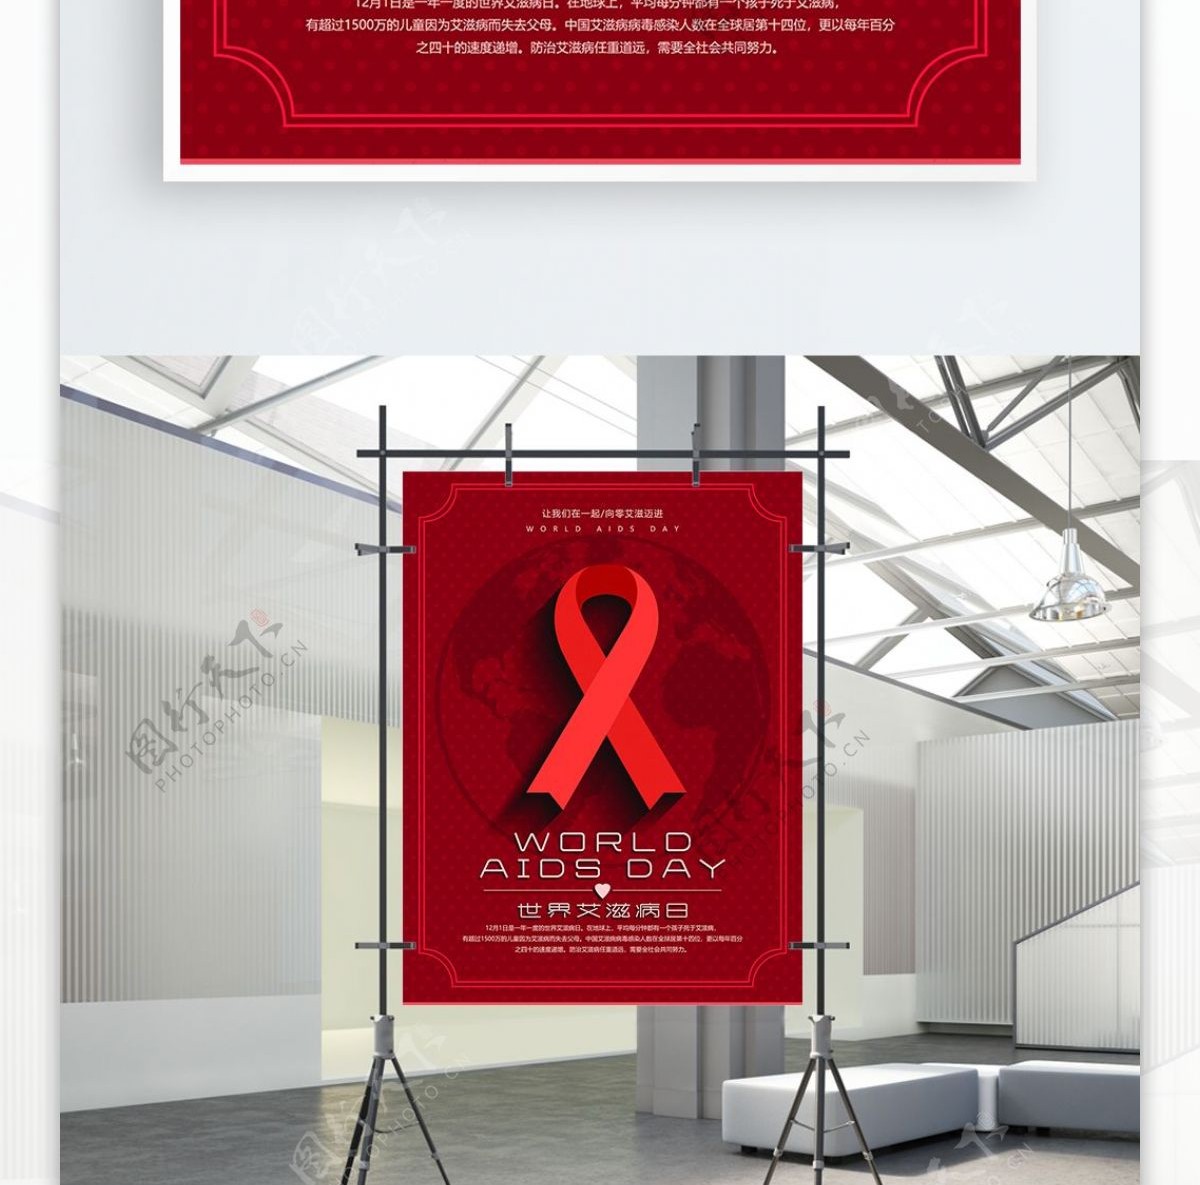 世界艾滋病日红色公益宣传海报psd源文件